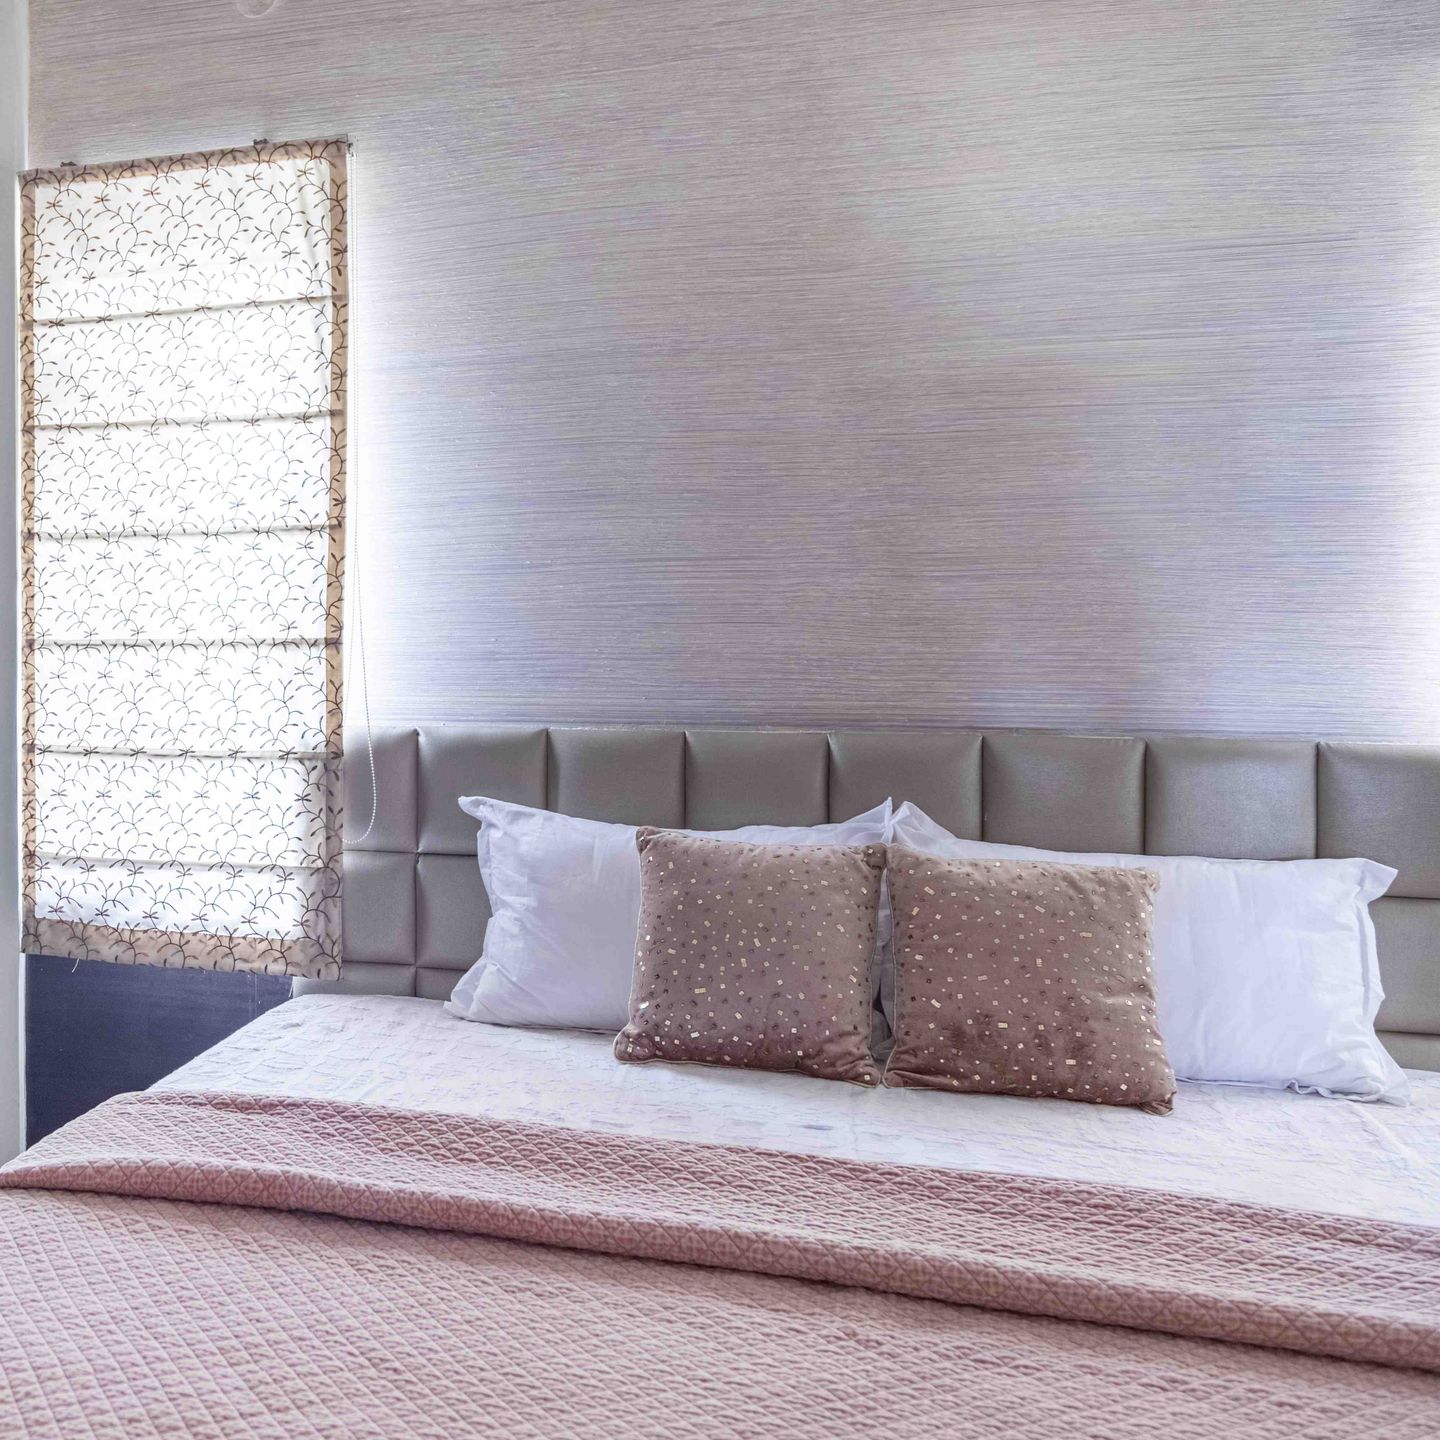 Textured Bedroom Wallpaper Design - Livspace